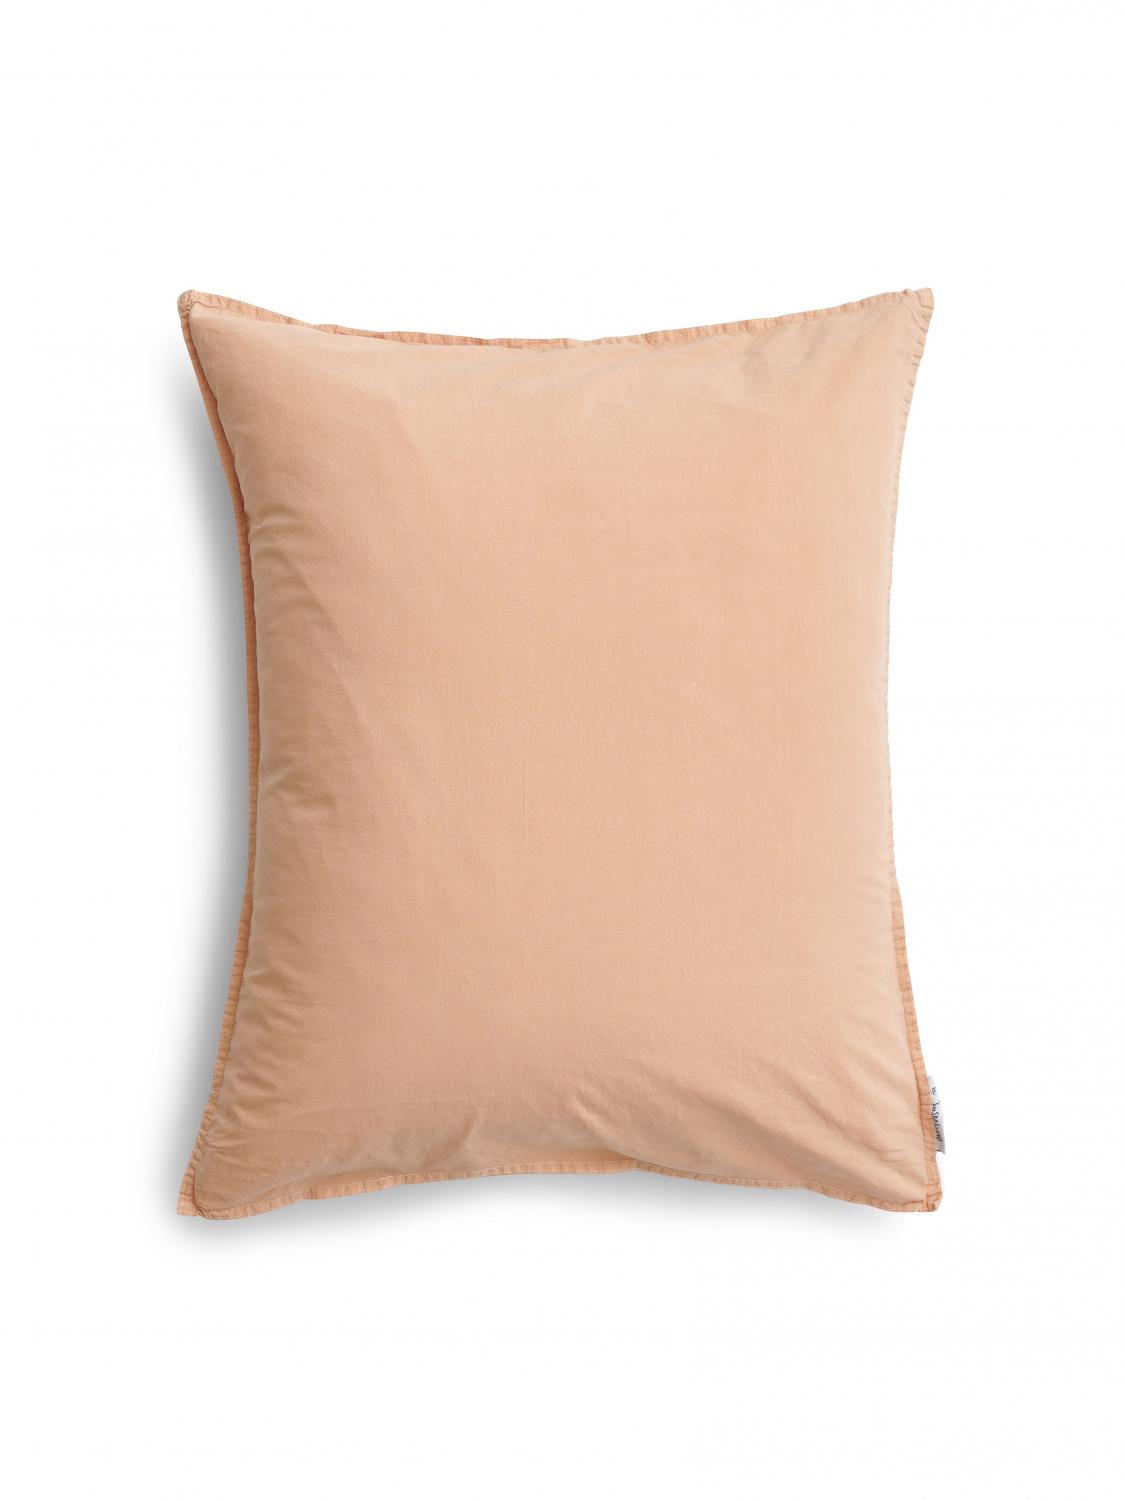 50x60cm Pillowcase Crinkle Peach Pink